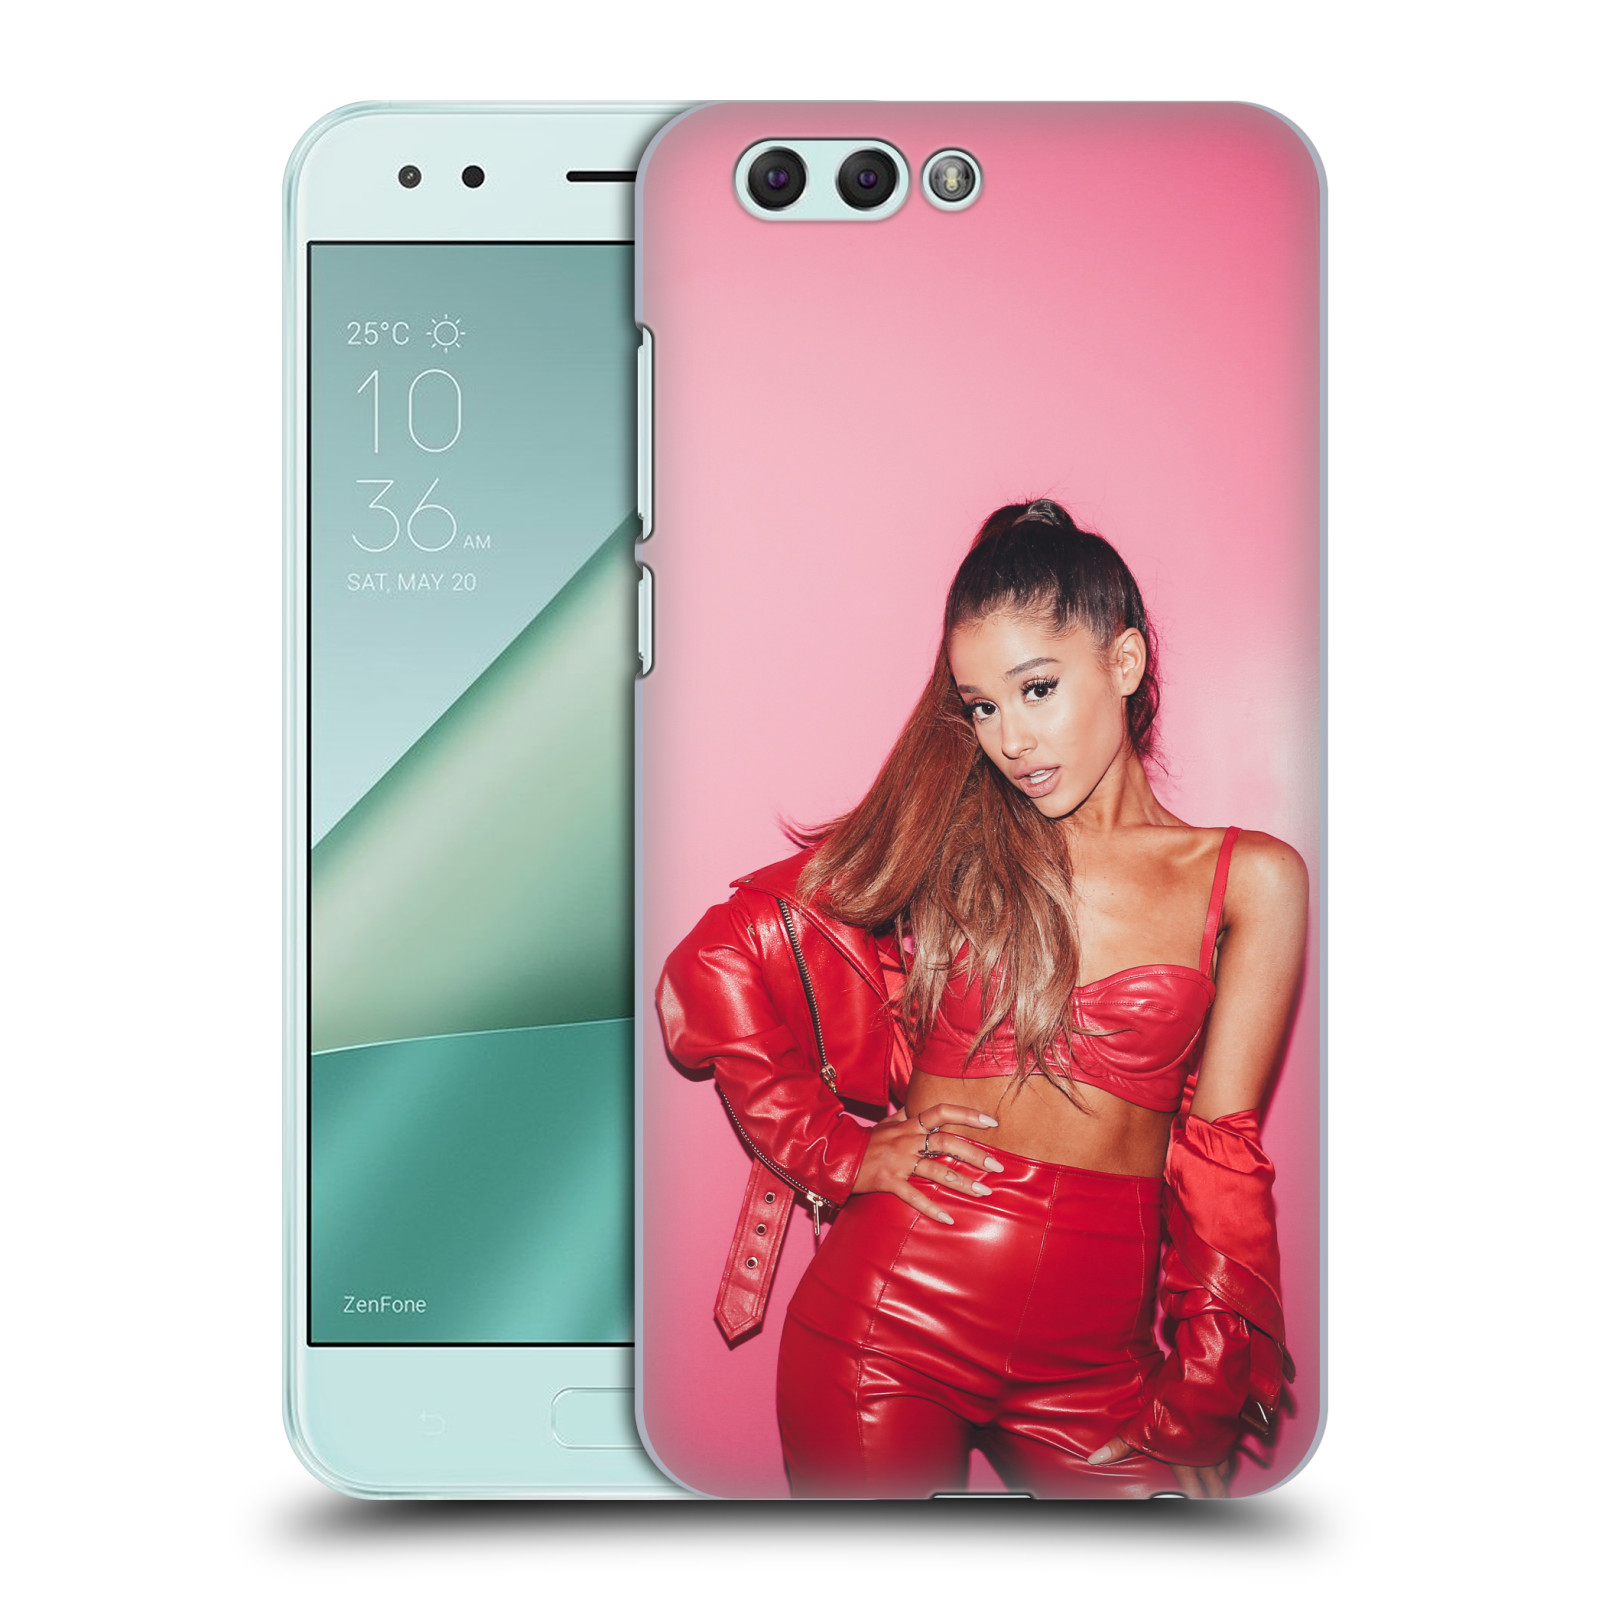 HEAD CASE plastový obal na mobil Asus Zenfone 4 ZE554KL zpěvačka Ariana Grande Dangerous Woman růžová